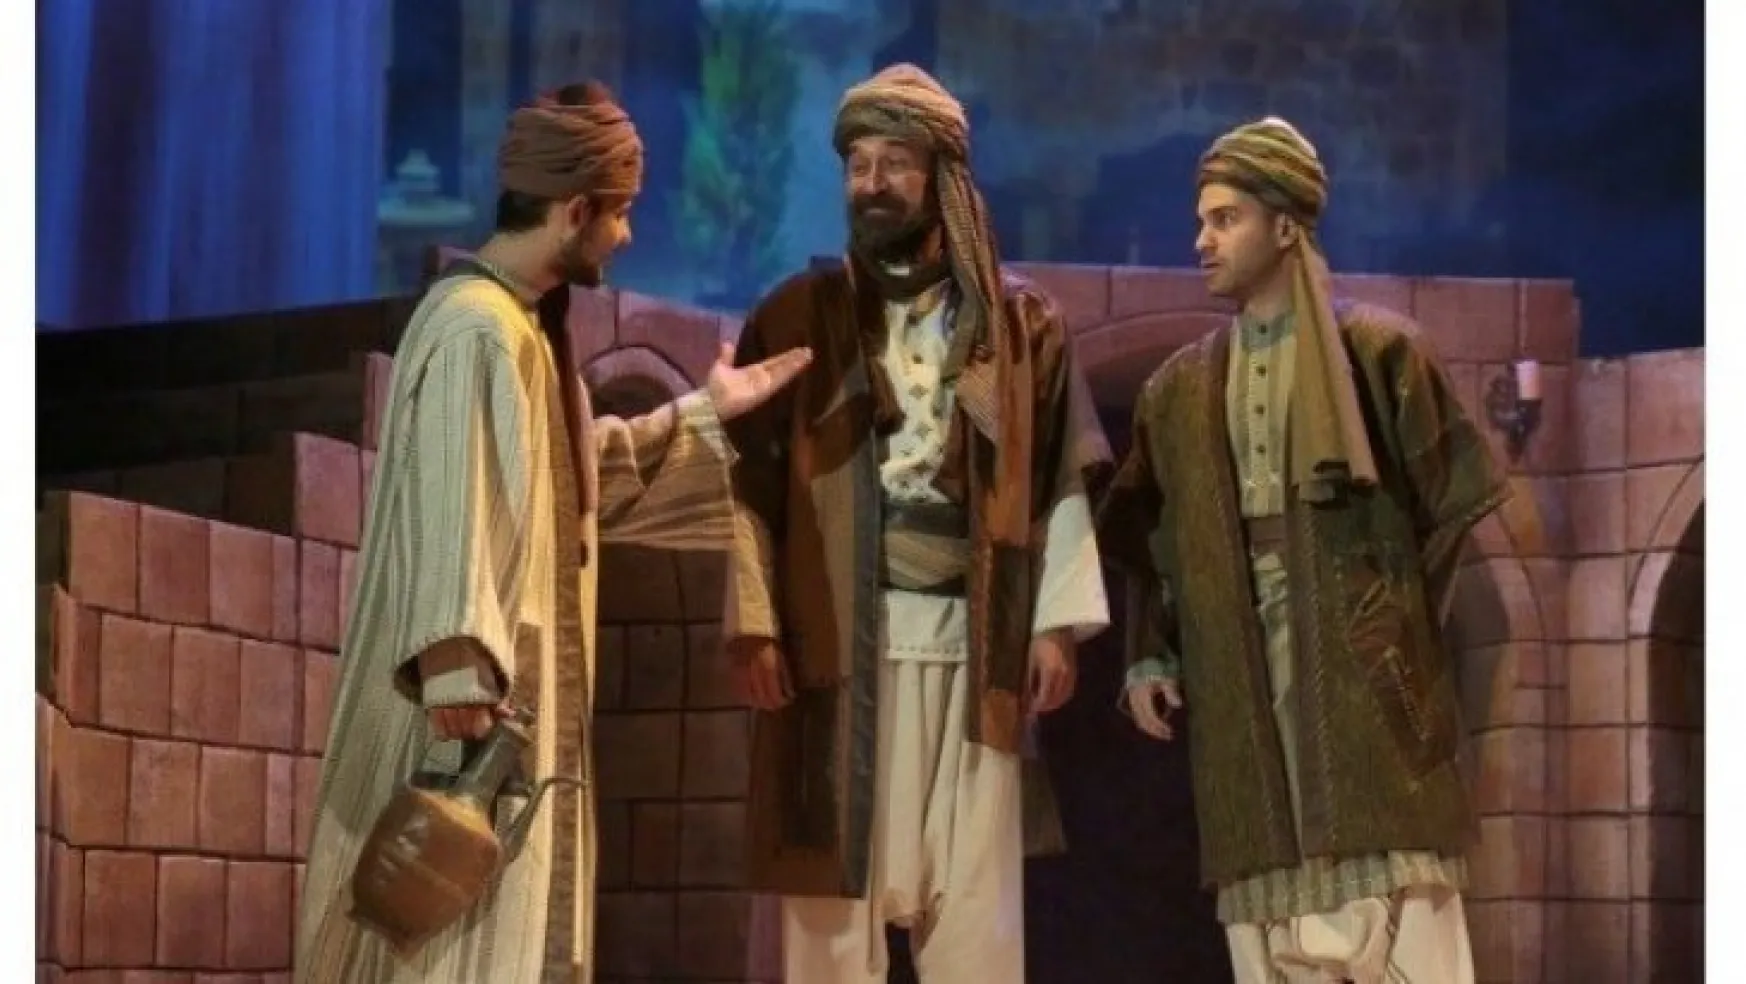 İzmir Devlet Tiyatrosu, 'Hacı Bektaş' adlı oyunla Kırşehir'de olacak